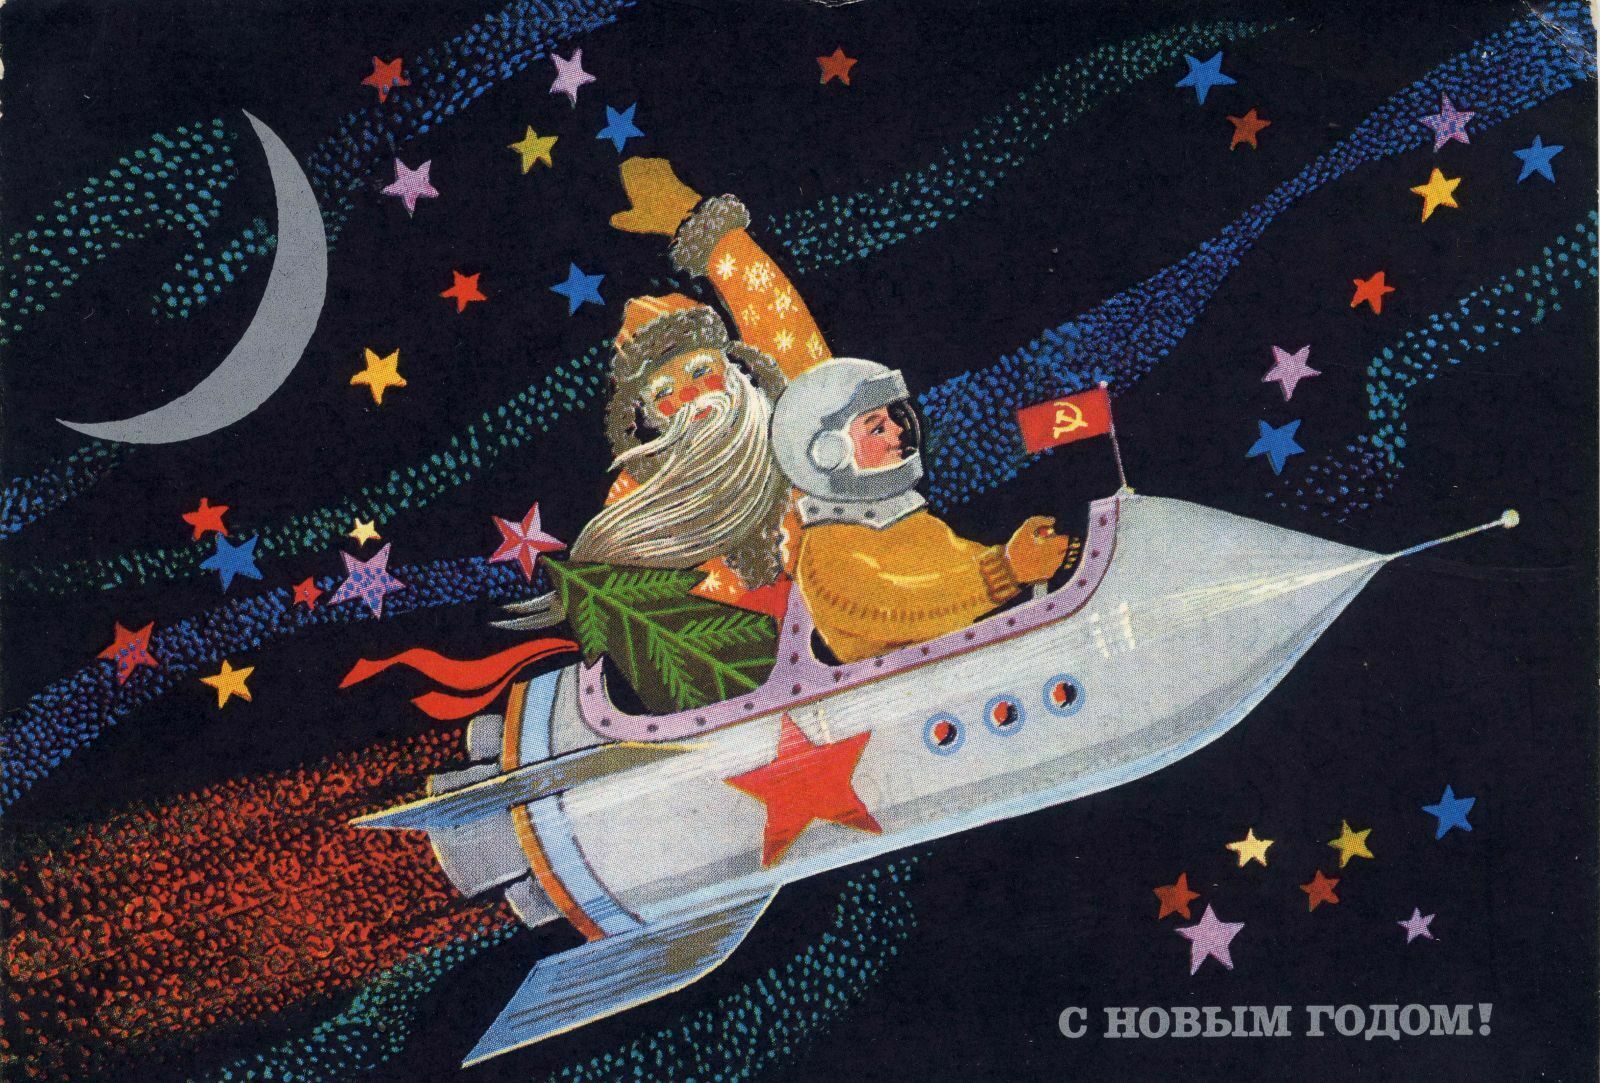 "Победа" бесплатно провезёт пассажиров в костюмах Деда Мороза или Снегурочки